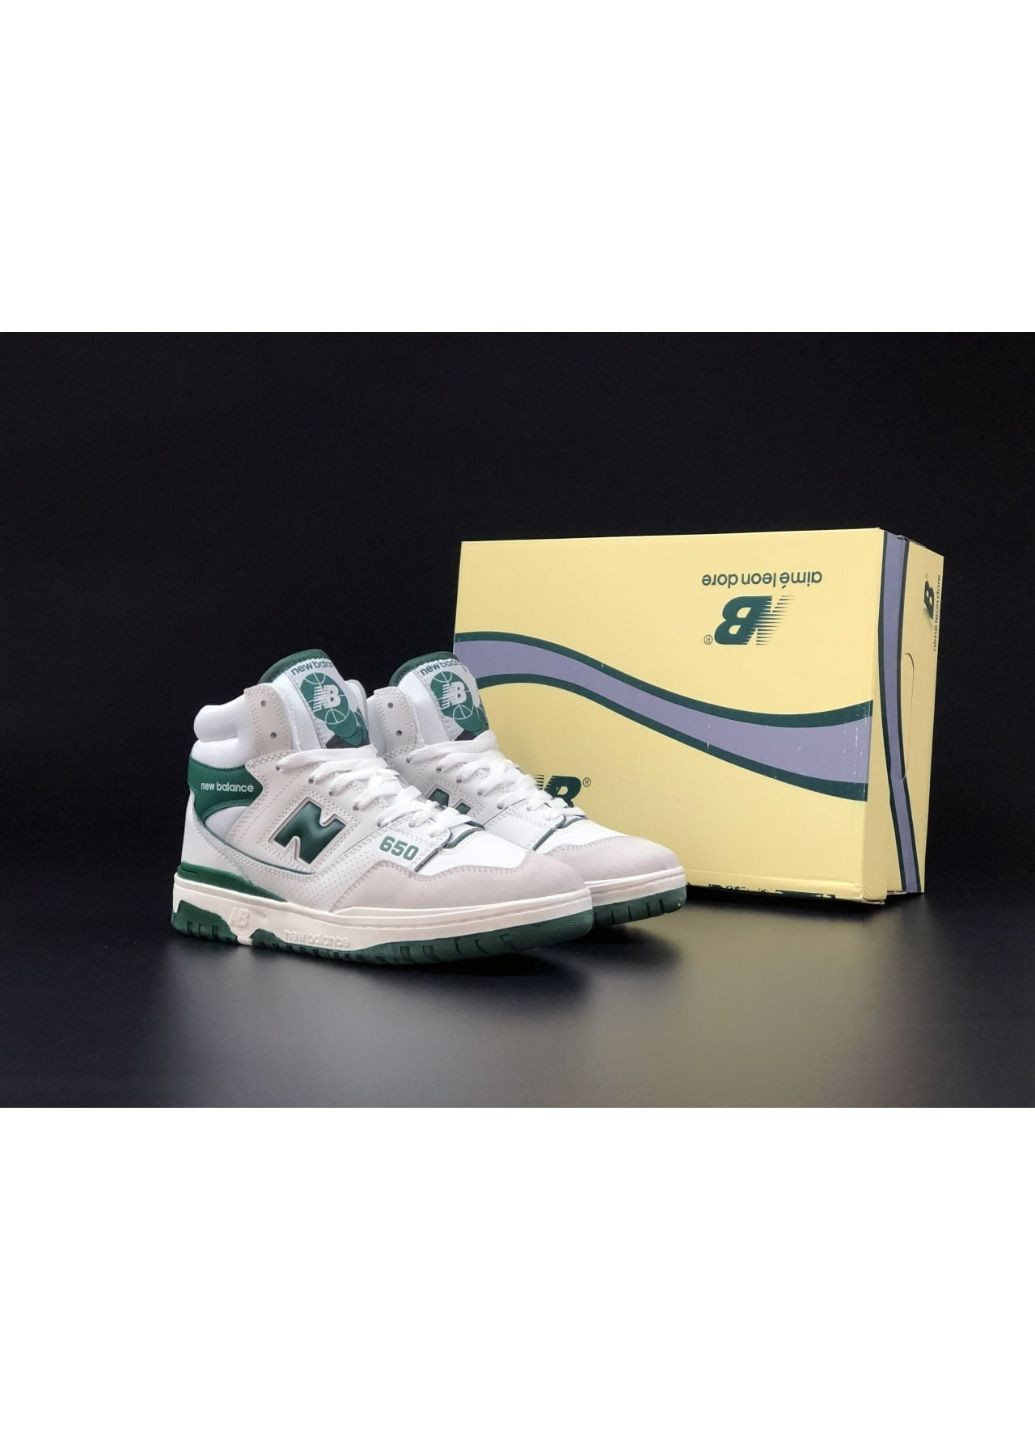 Белые демисезонные мужские кроссовки белые с зеленым "no name" New Balance 650